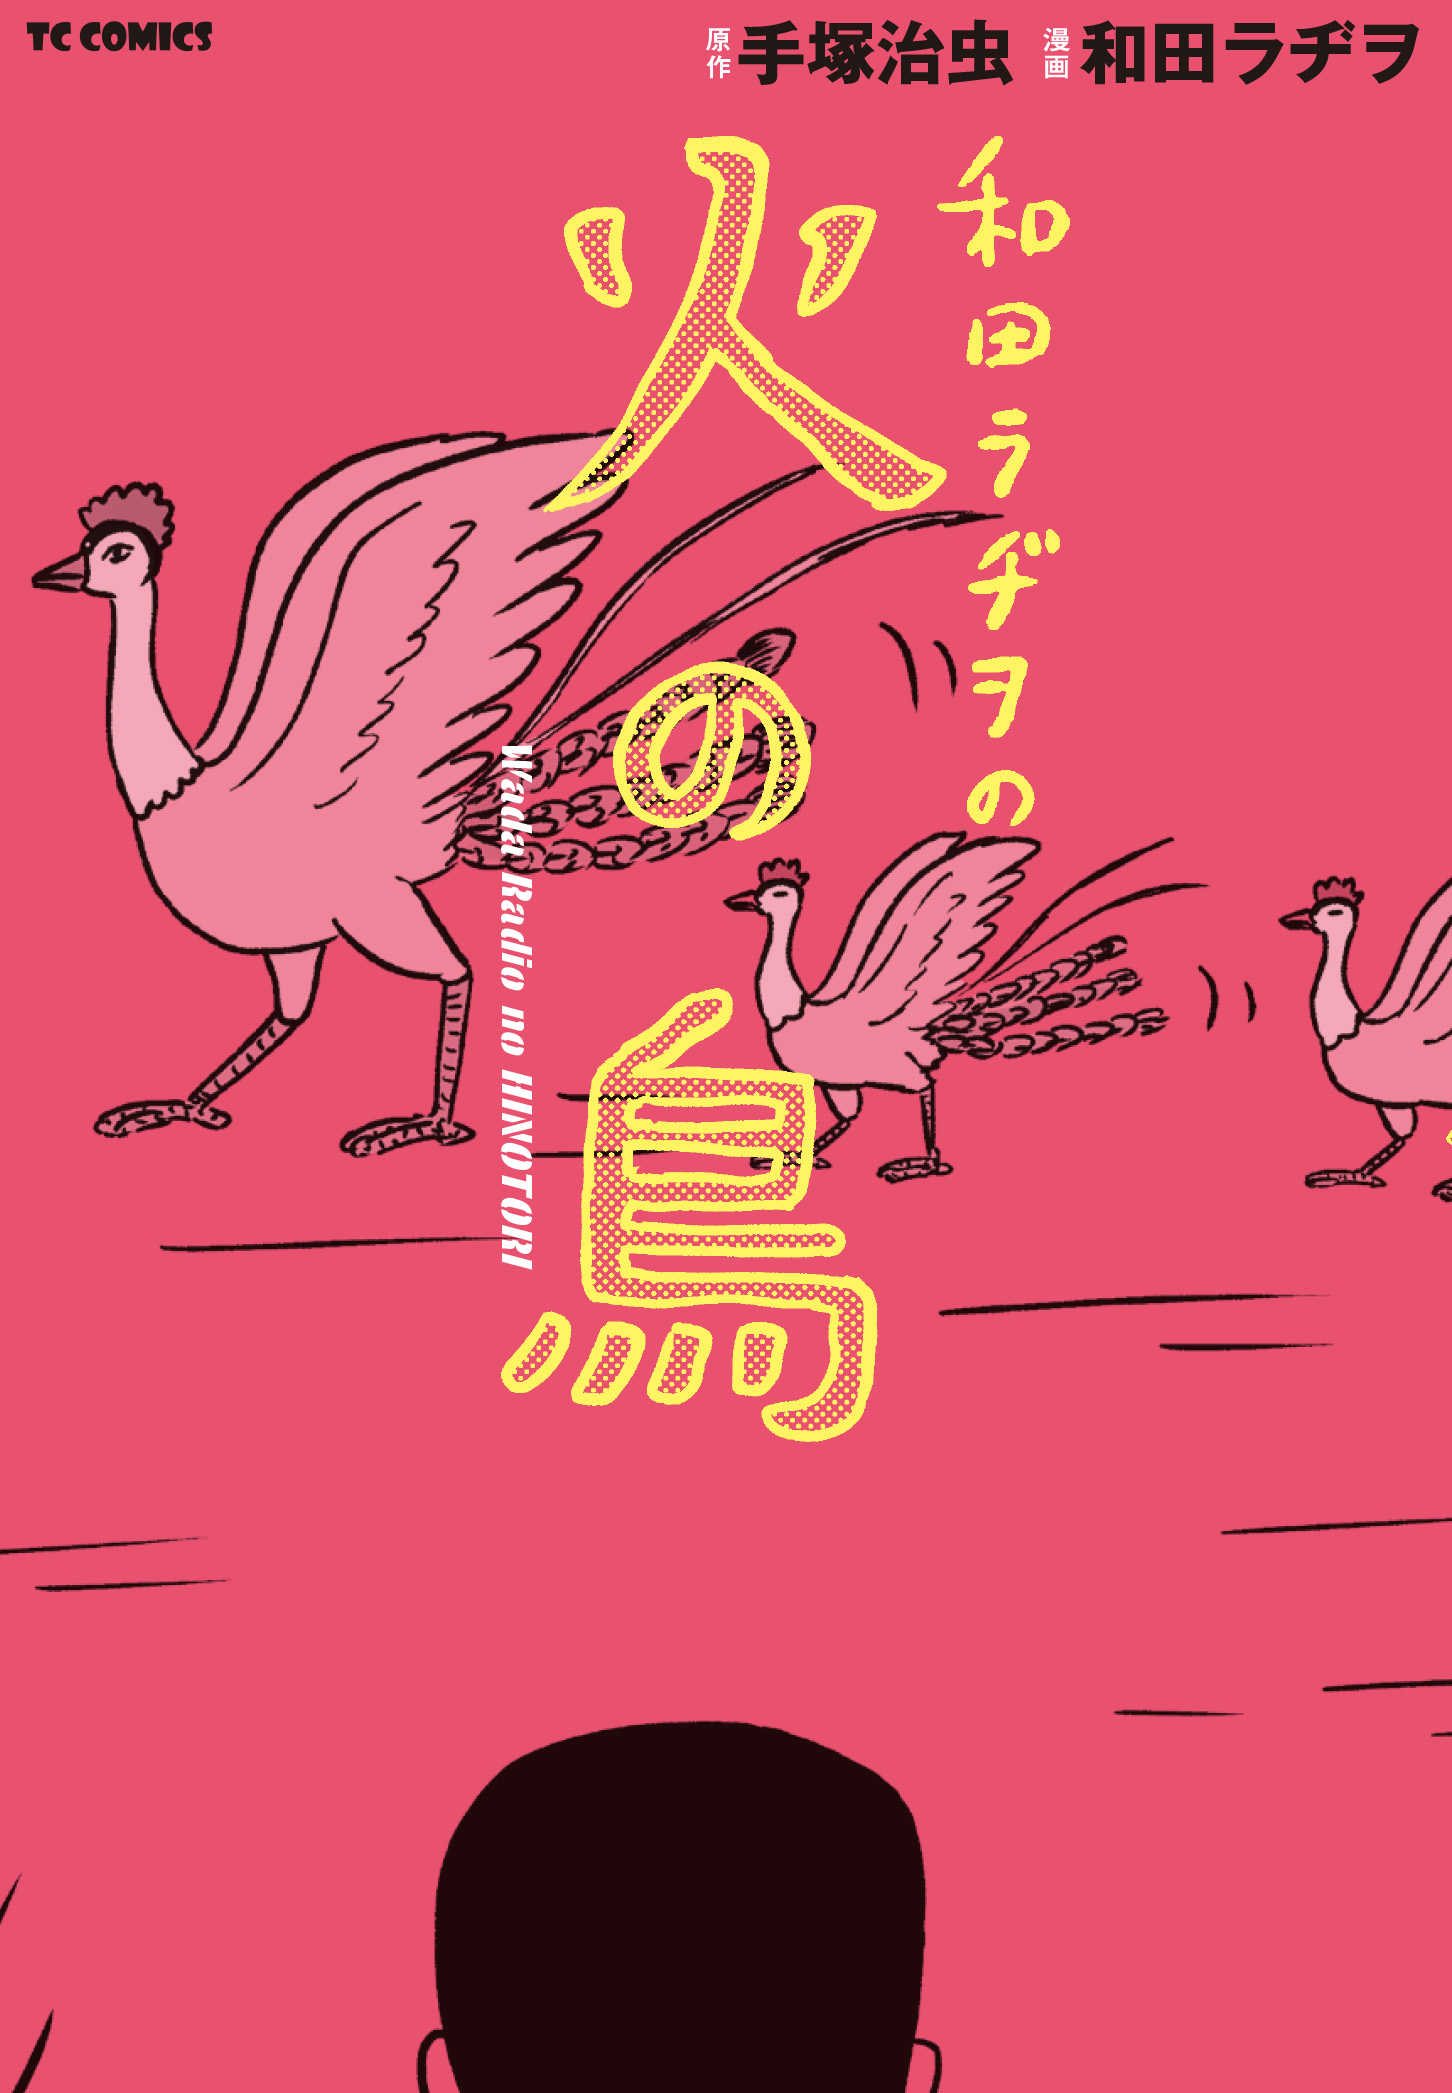 和田ラヂヲ史上初 1話8ページの大ボリュームで描いた 火の鳥 のオマージュ作品が遂に単行本化 Tcコミックス 和田ラヂヲの火の鳥 が発売 株式会社マイクロマガジン社のプレスリリース